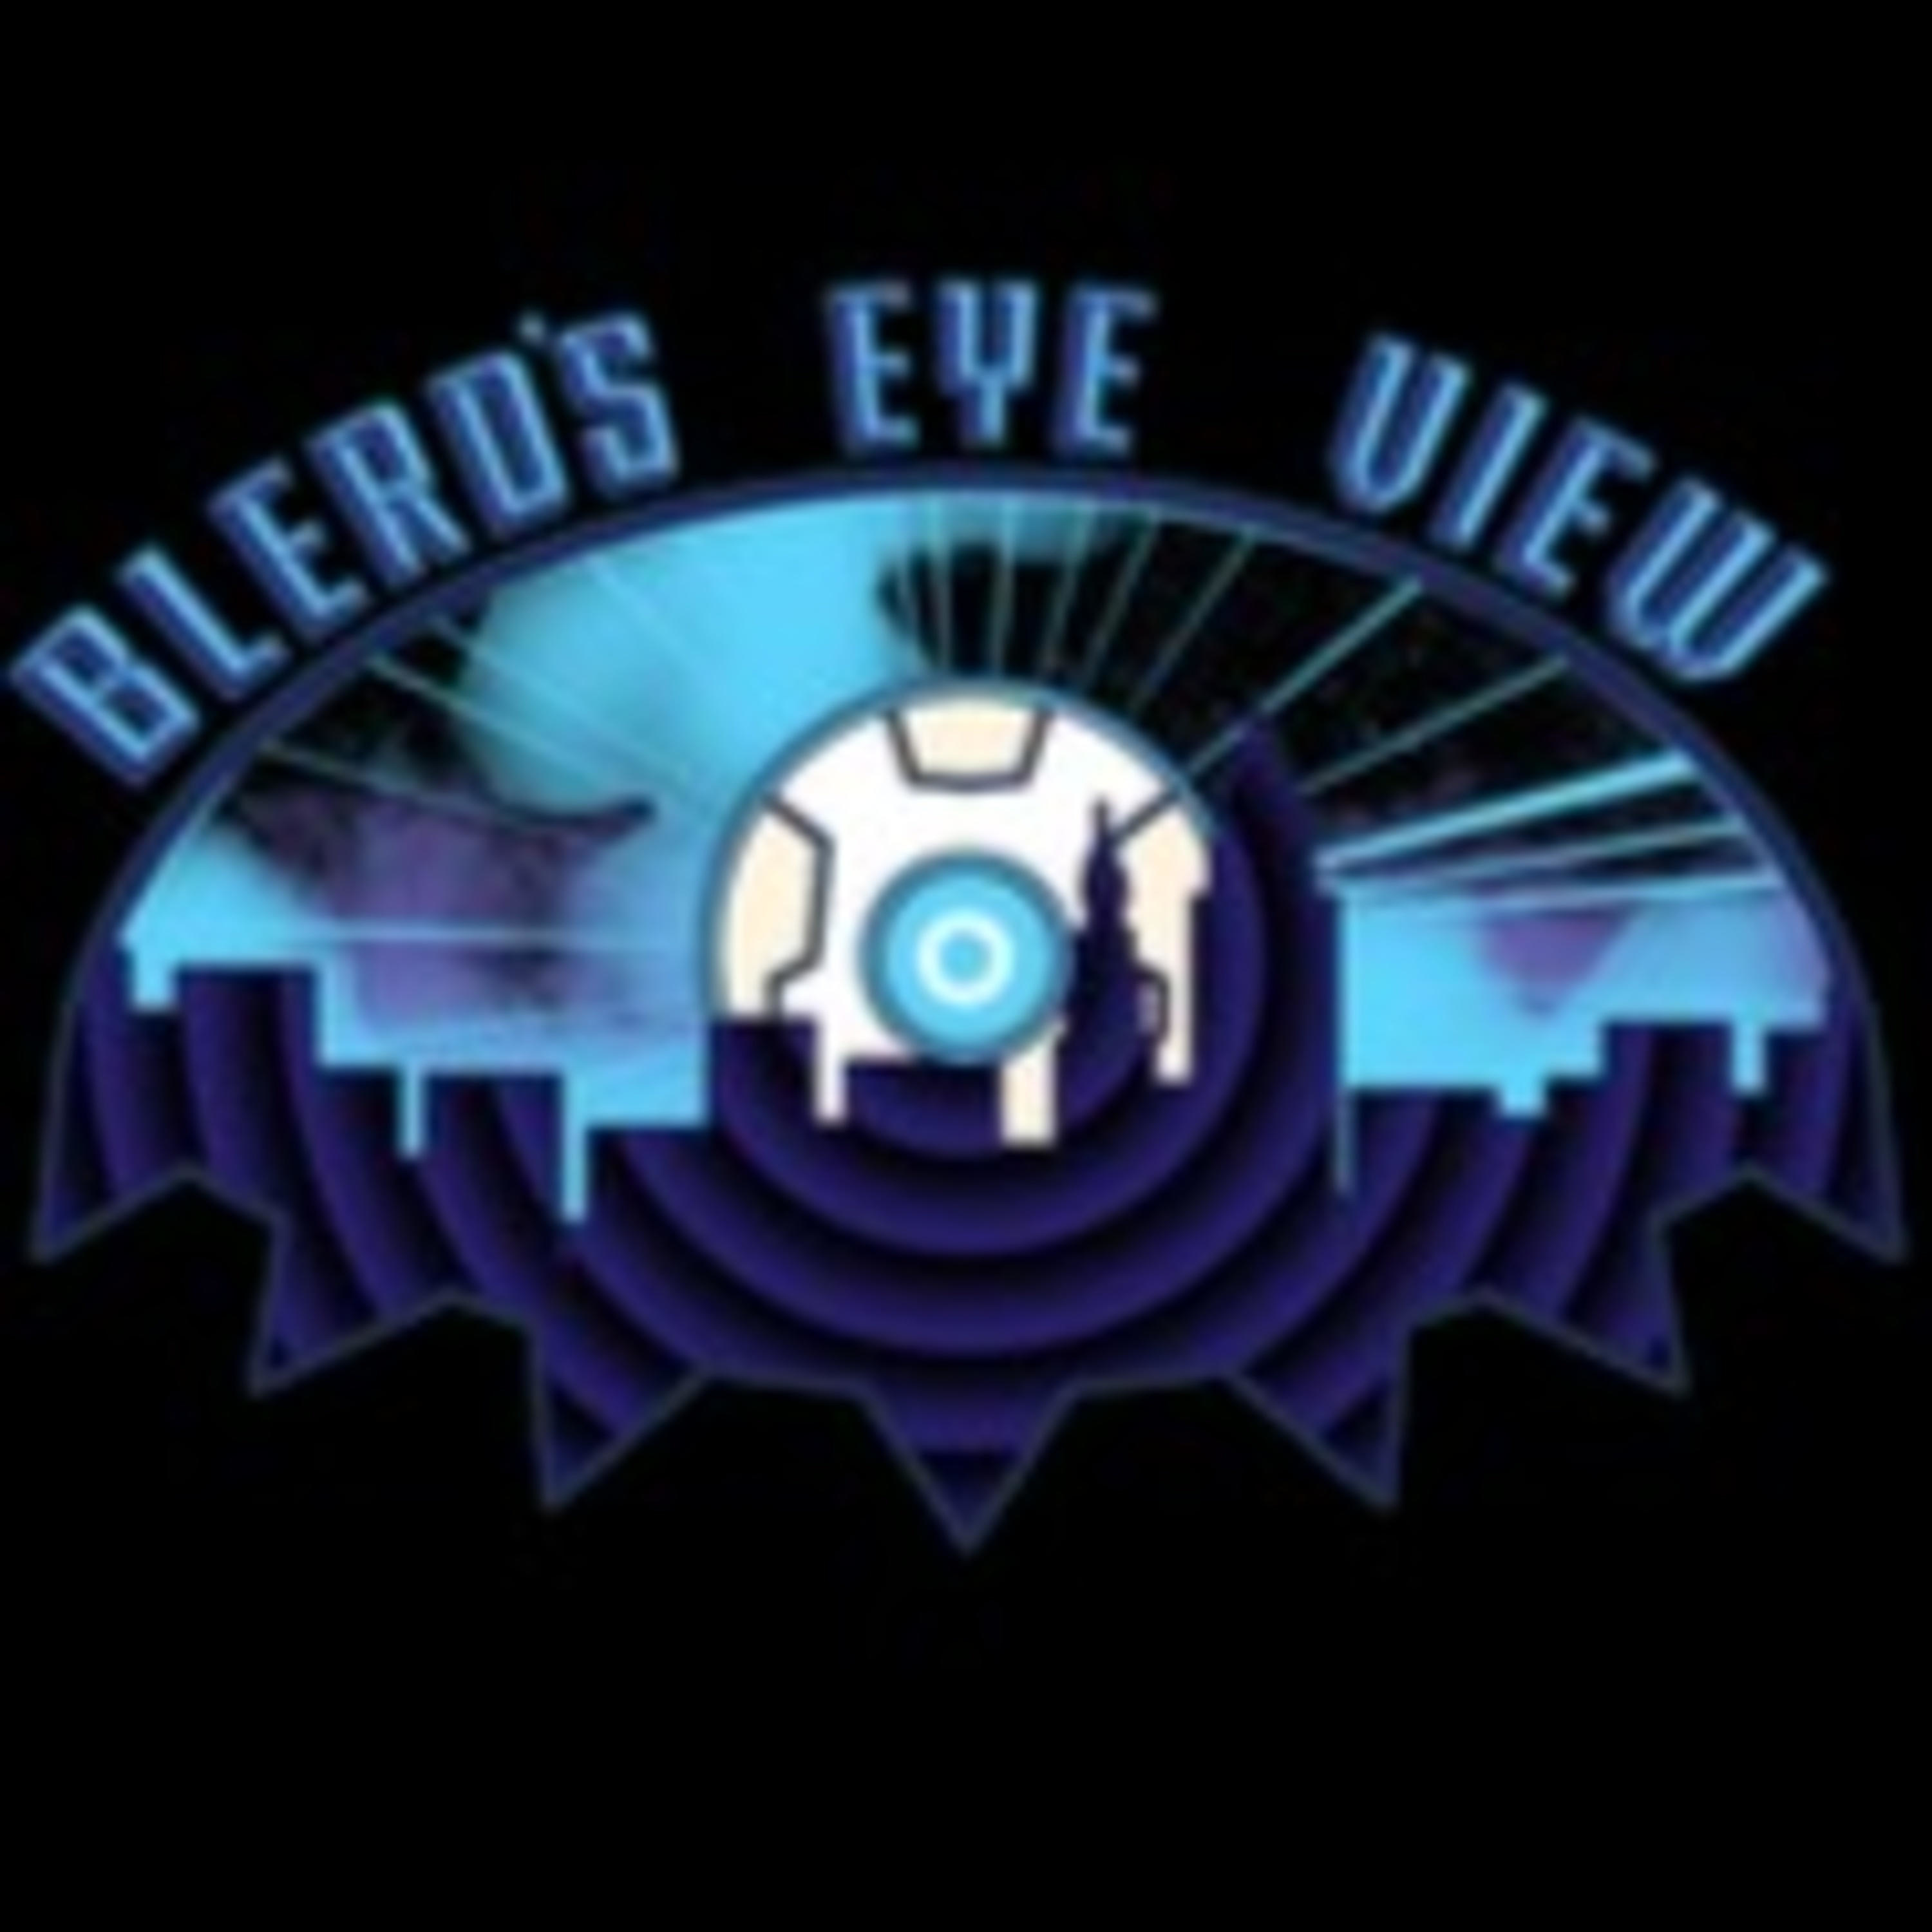 Show artwork for Blerd’s Eyeview